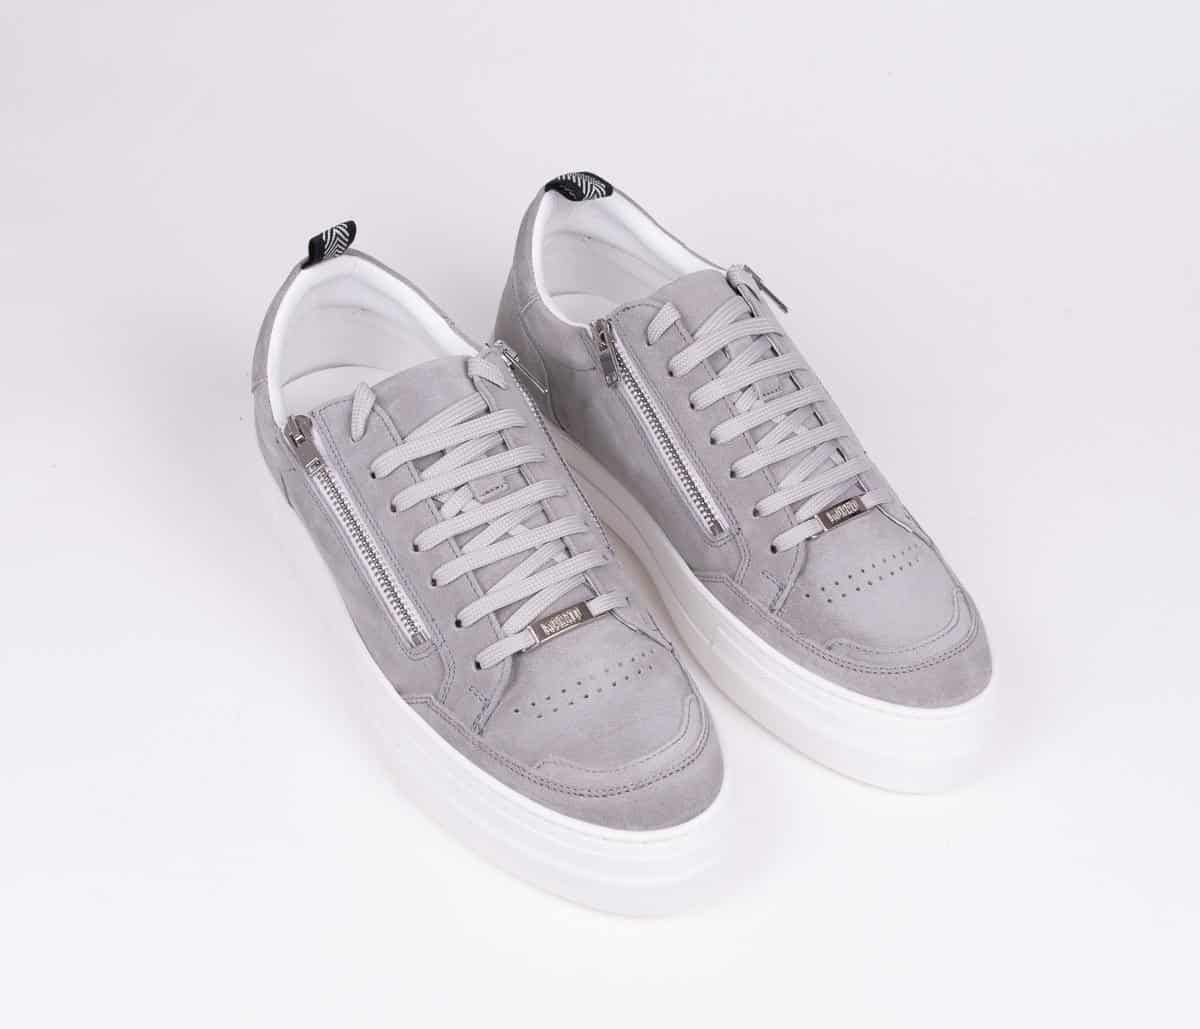 Antony Morato Sneakers With Zippers Grey